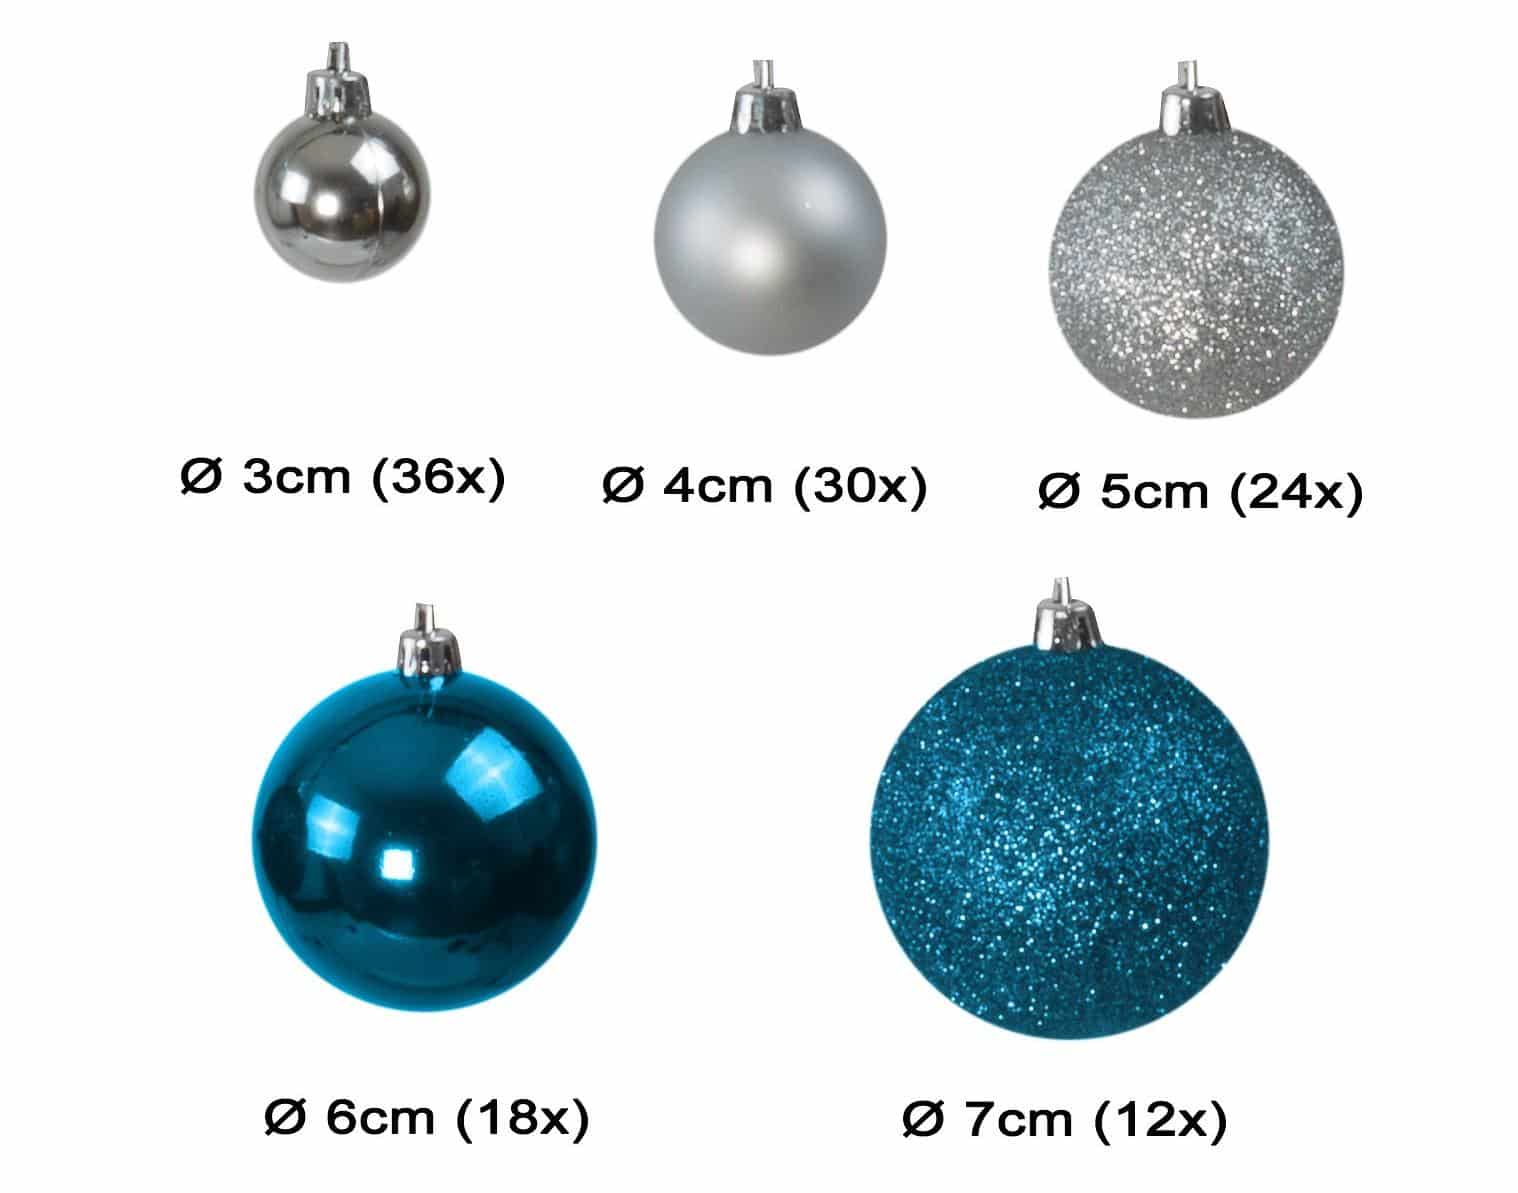 Kunststof Kerstballen set 120 ballen - binnen buiten - Blauw/Zilver